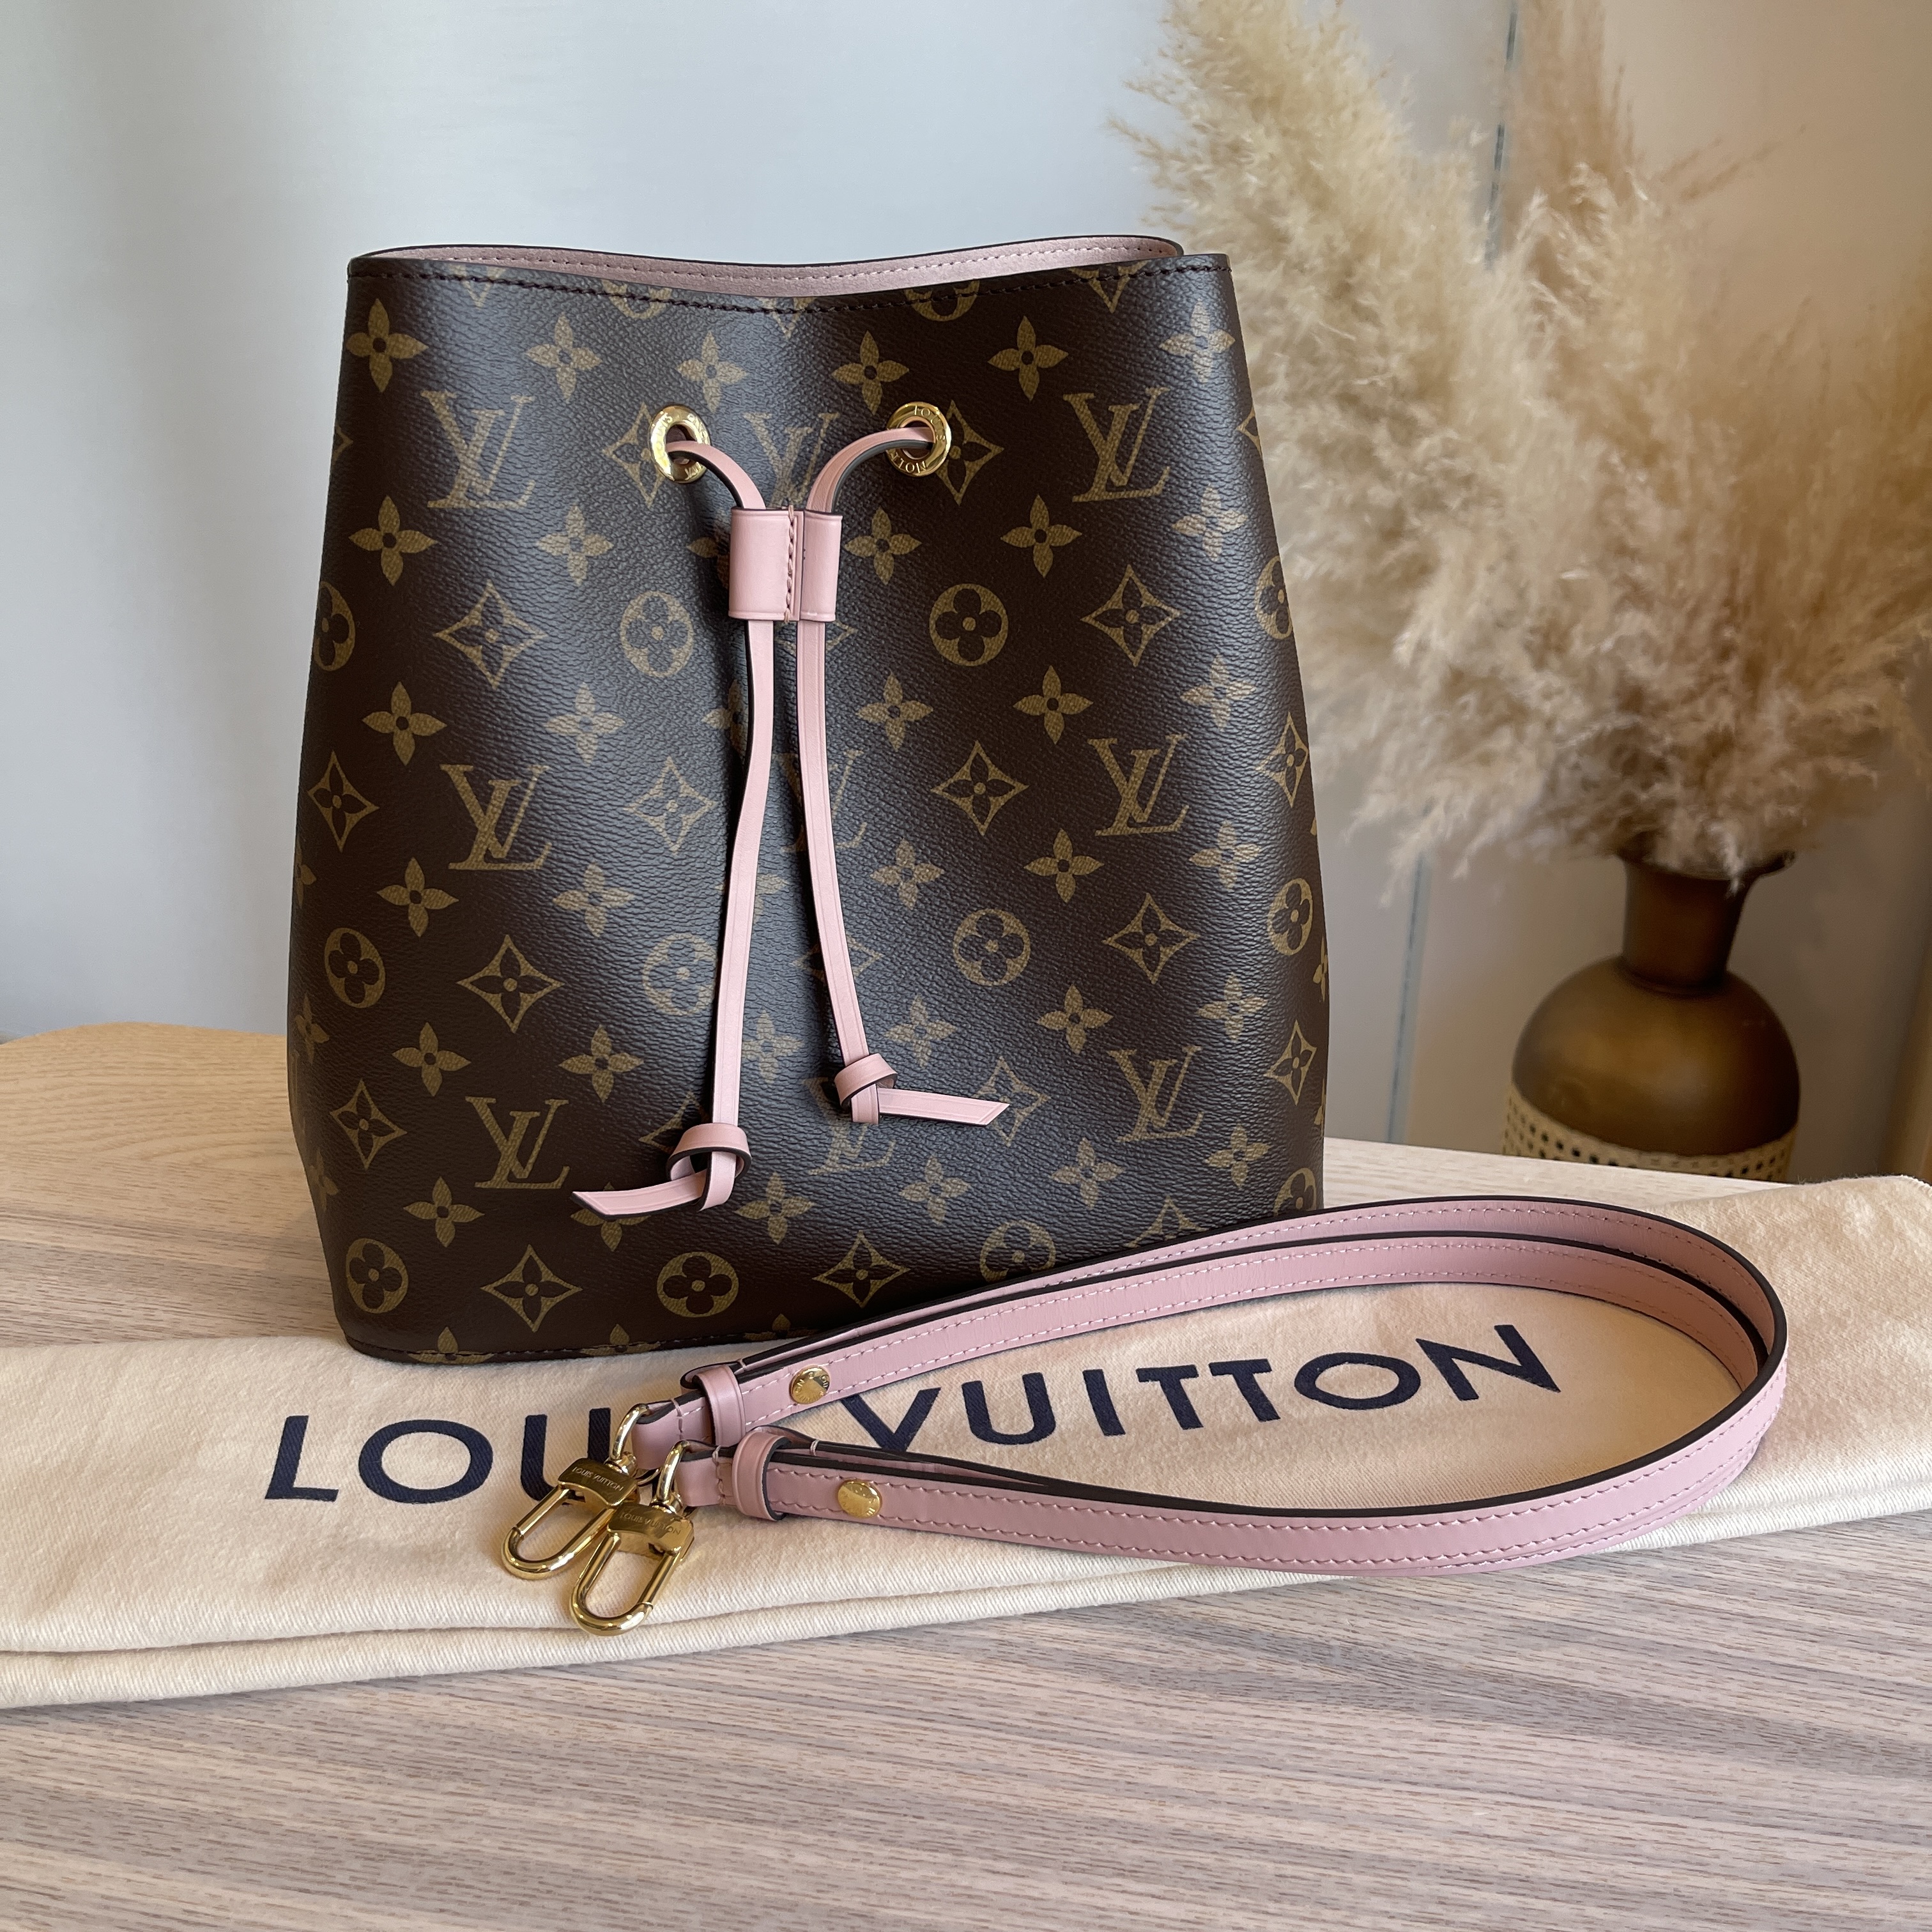 Louis Vuitton Rose Poudre Monogram Canvas NeoNoe Bag